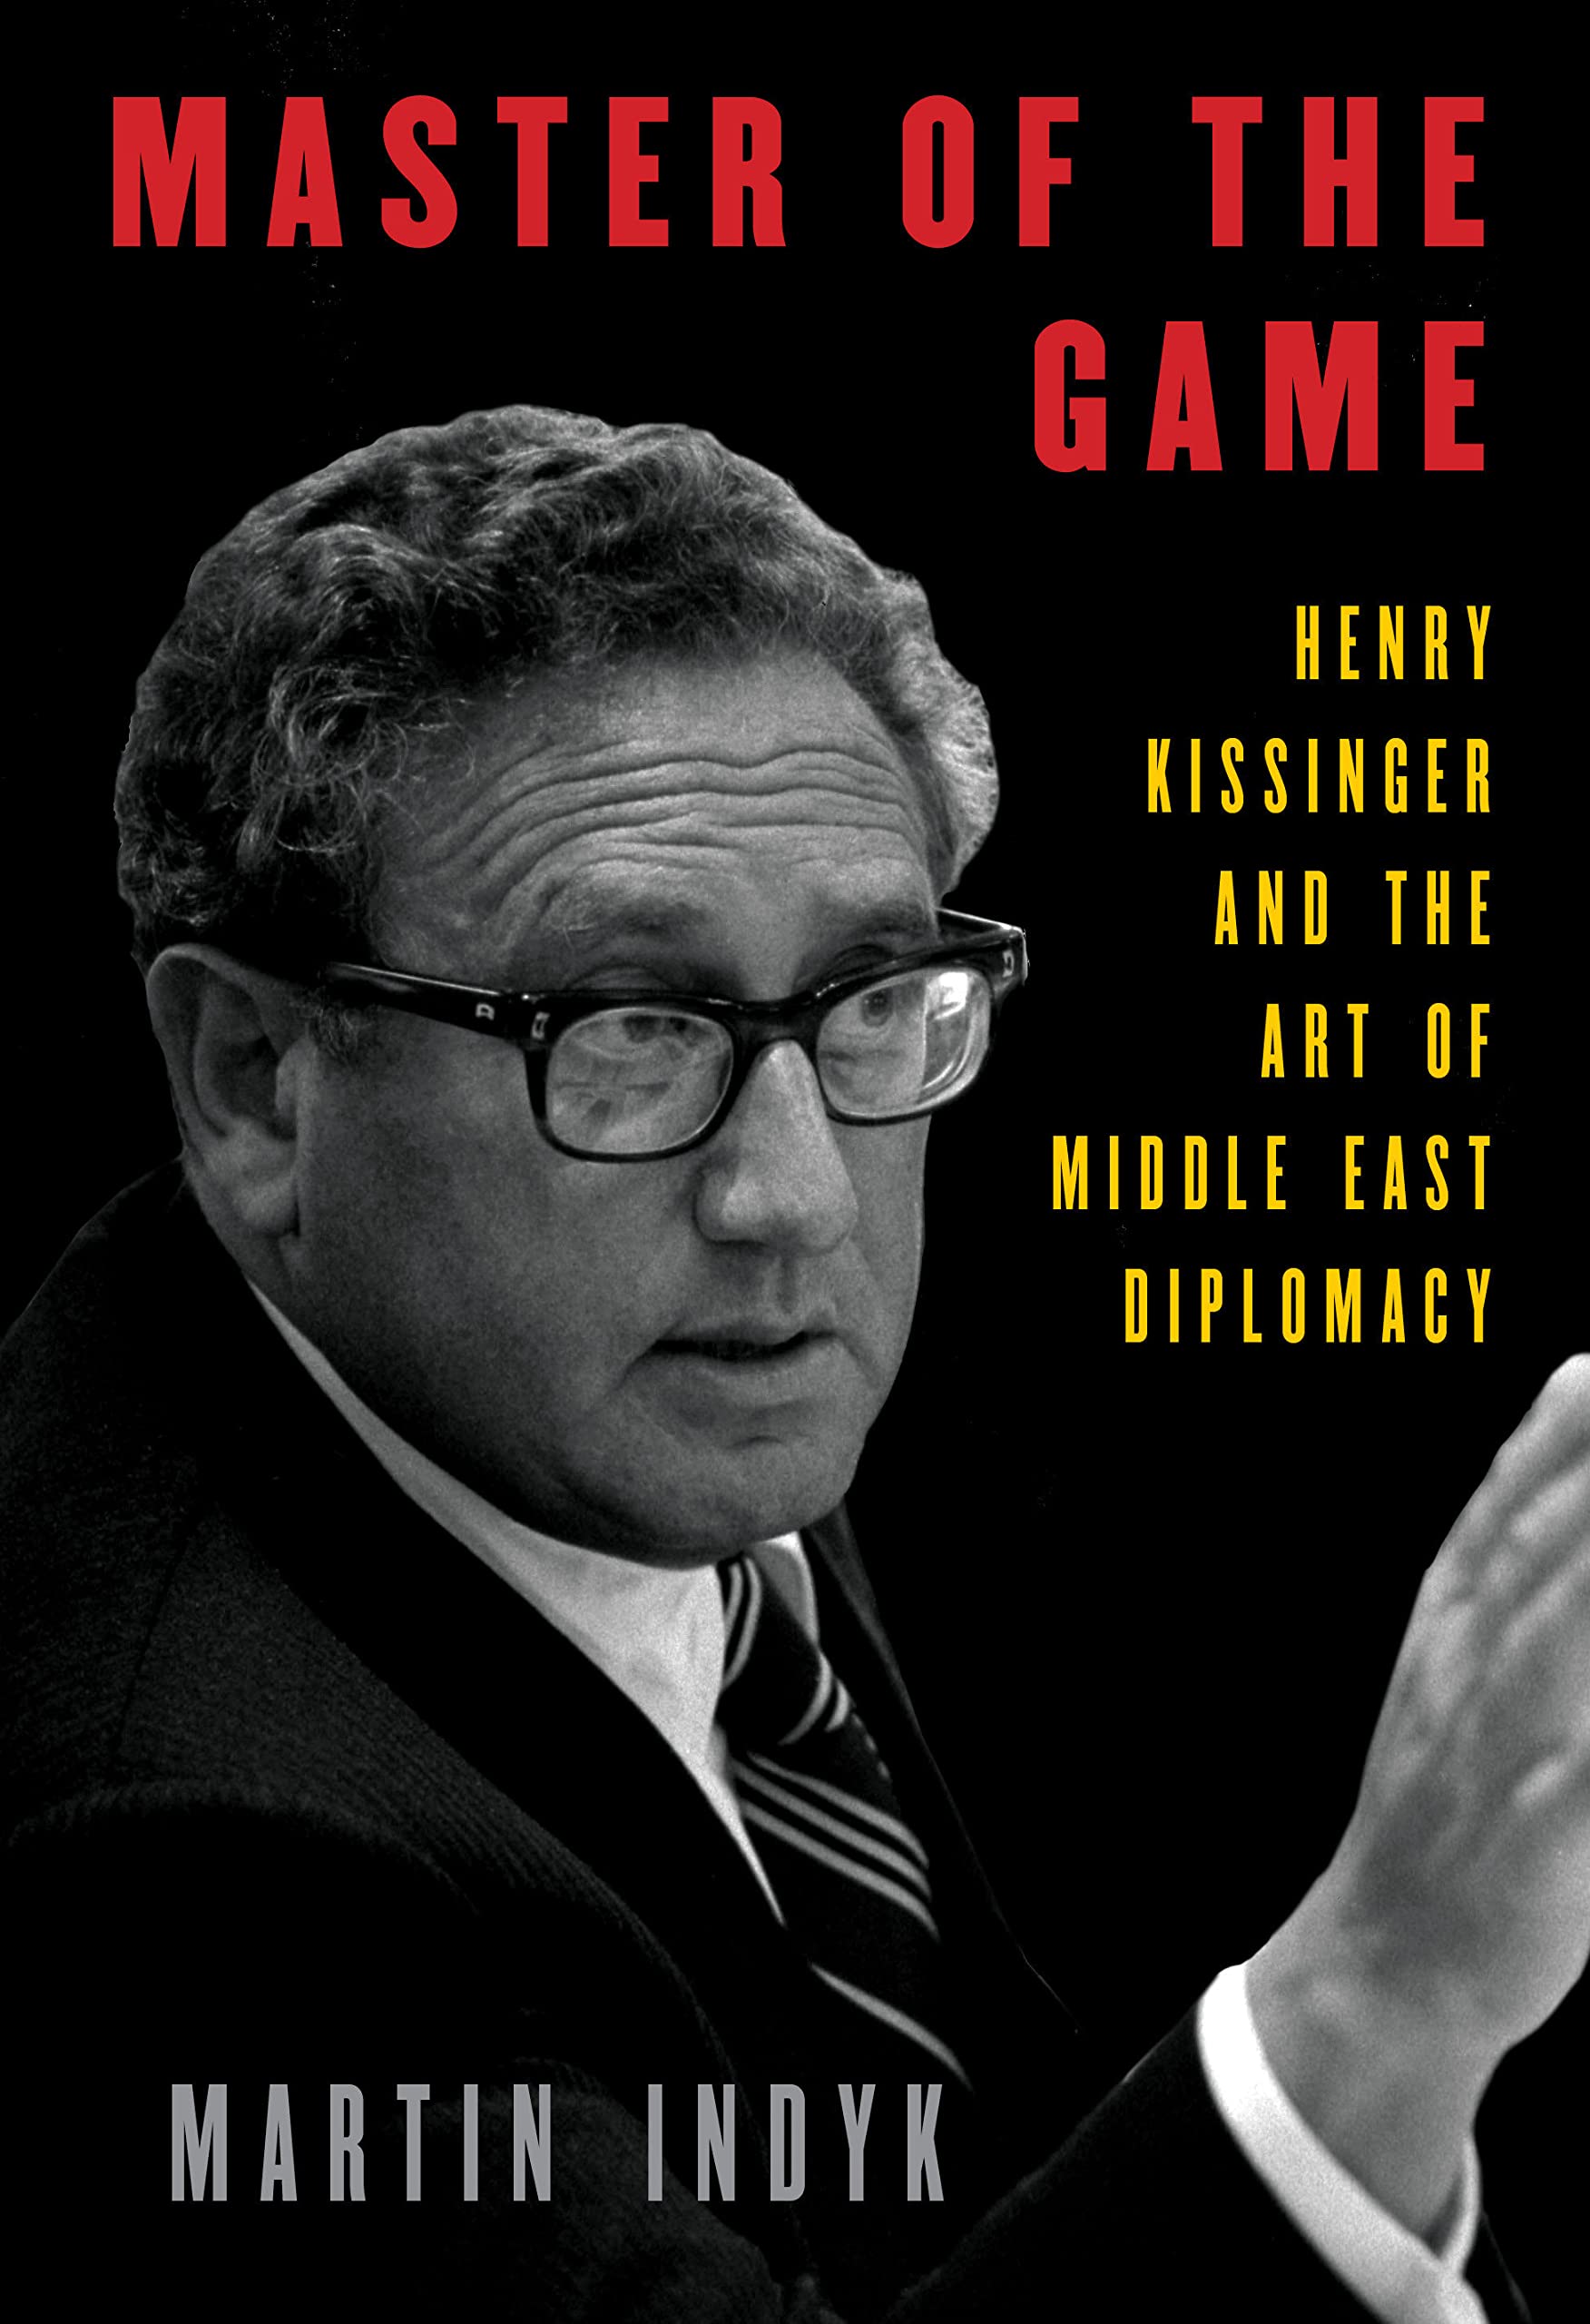 الغلاف الإنكليزي لكتاب "سيد اللعبة" للدبلوماسي والسياسي المخضرم مارتن إنديك عن وزير الخارجية الأمريكي الأسبق كيسنجر. Book Cover - Master of the Game Henry Kissinger and the Art of Middle East Diplomacy - Author Martin Indyk